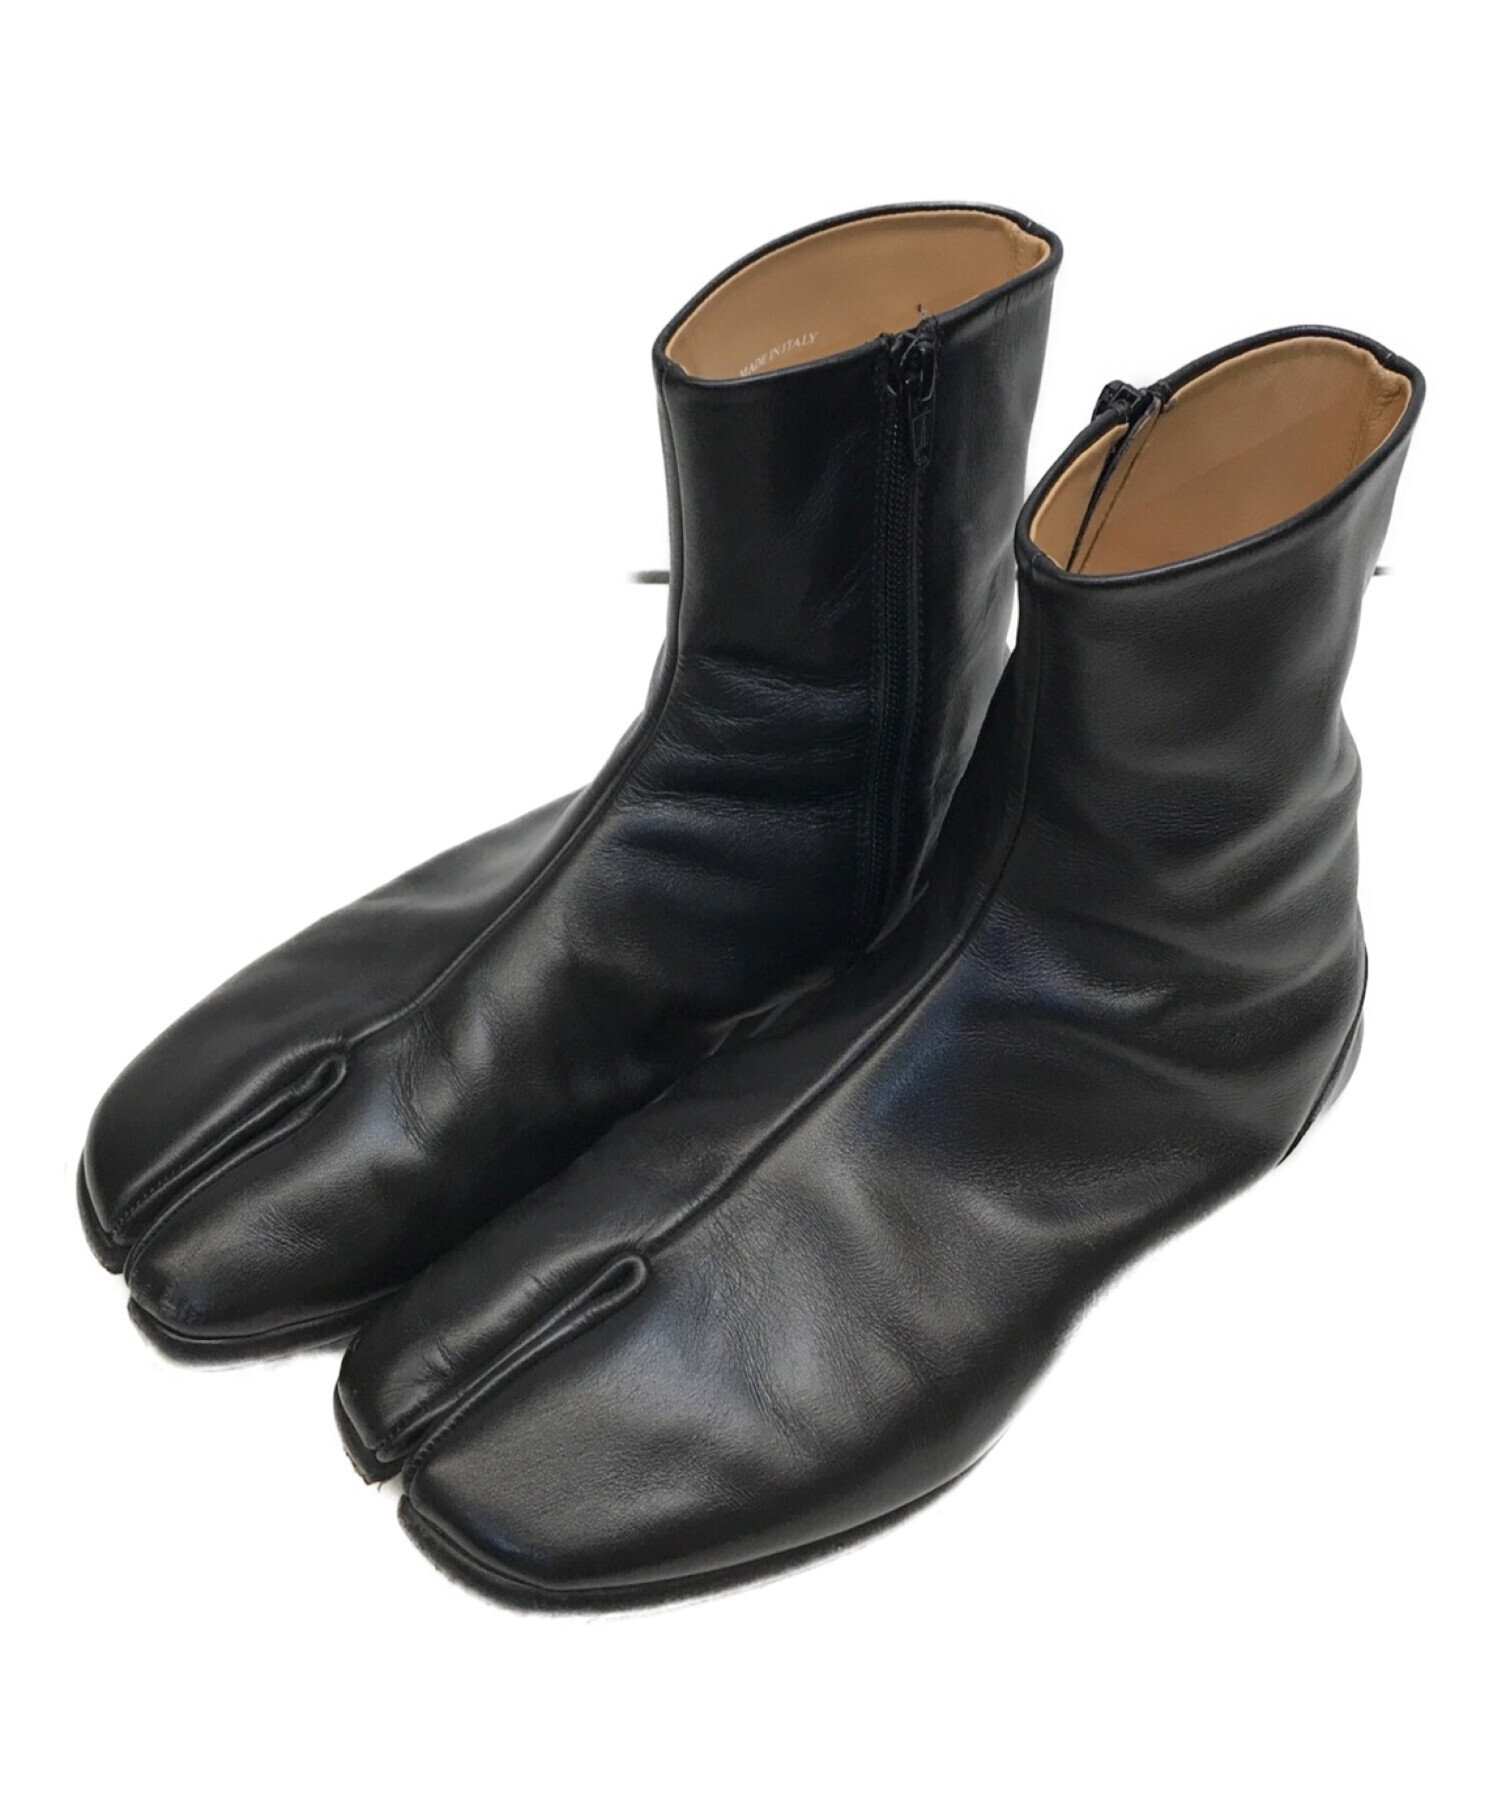 Maison Margiela 22 (メゾン マルジェラ 22) TABI BOOTS 足袋ブーツ タビブーツ フラット ブラック サイズ:41